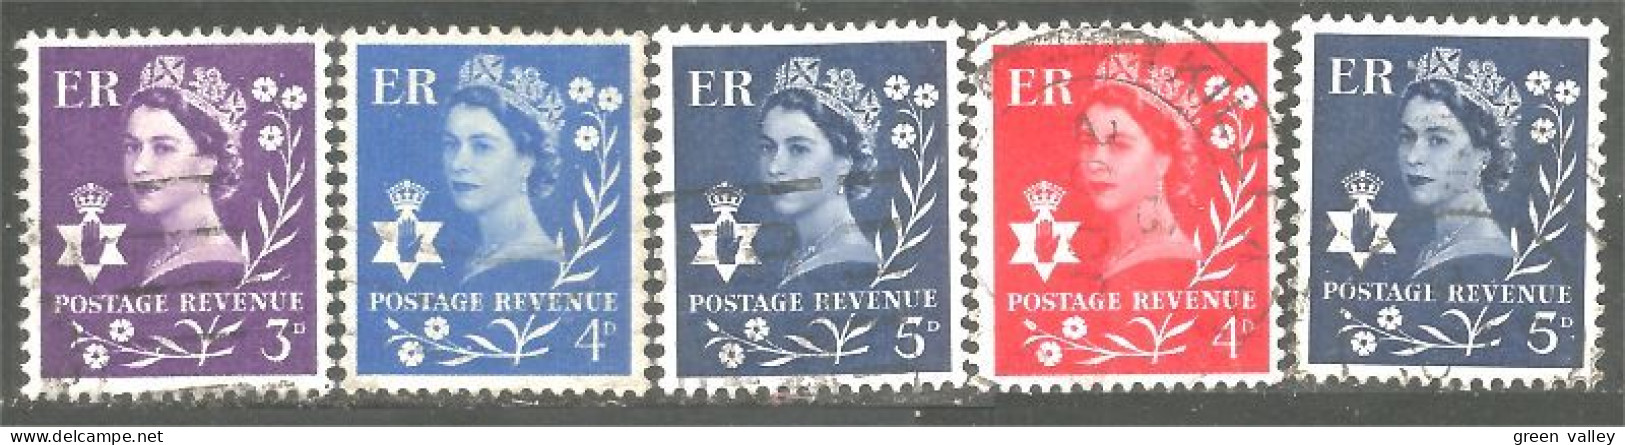 414 G-B Regionals Northern Ireland 5 Stamps Queen Elizabeth (REG-27) - Northern Ireland